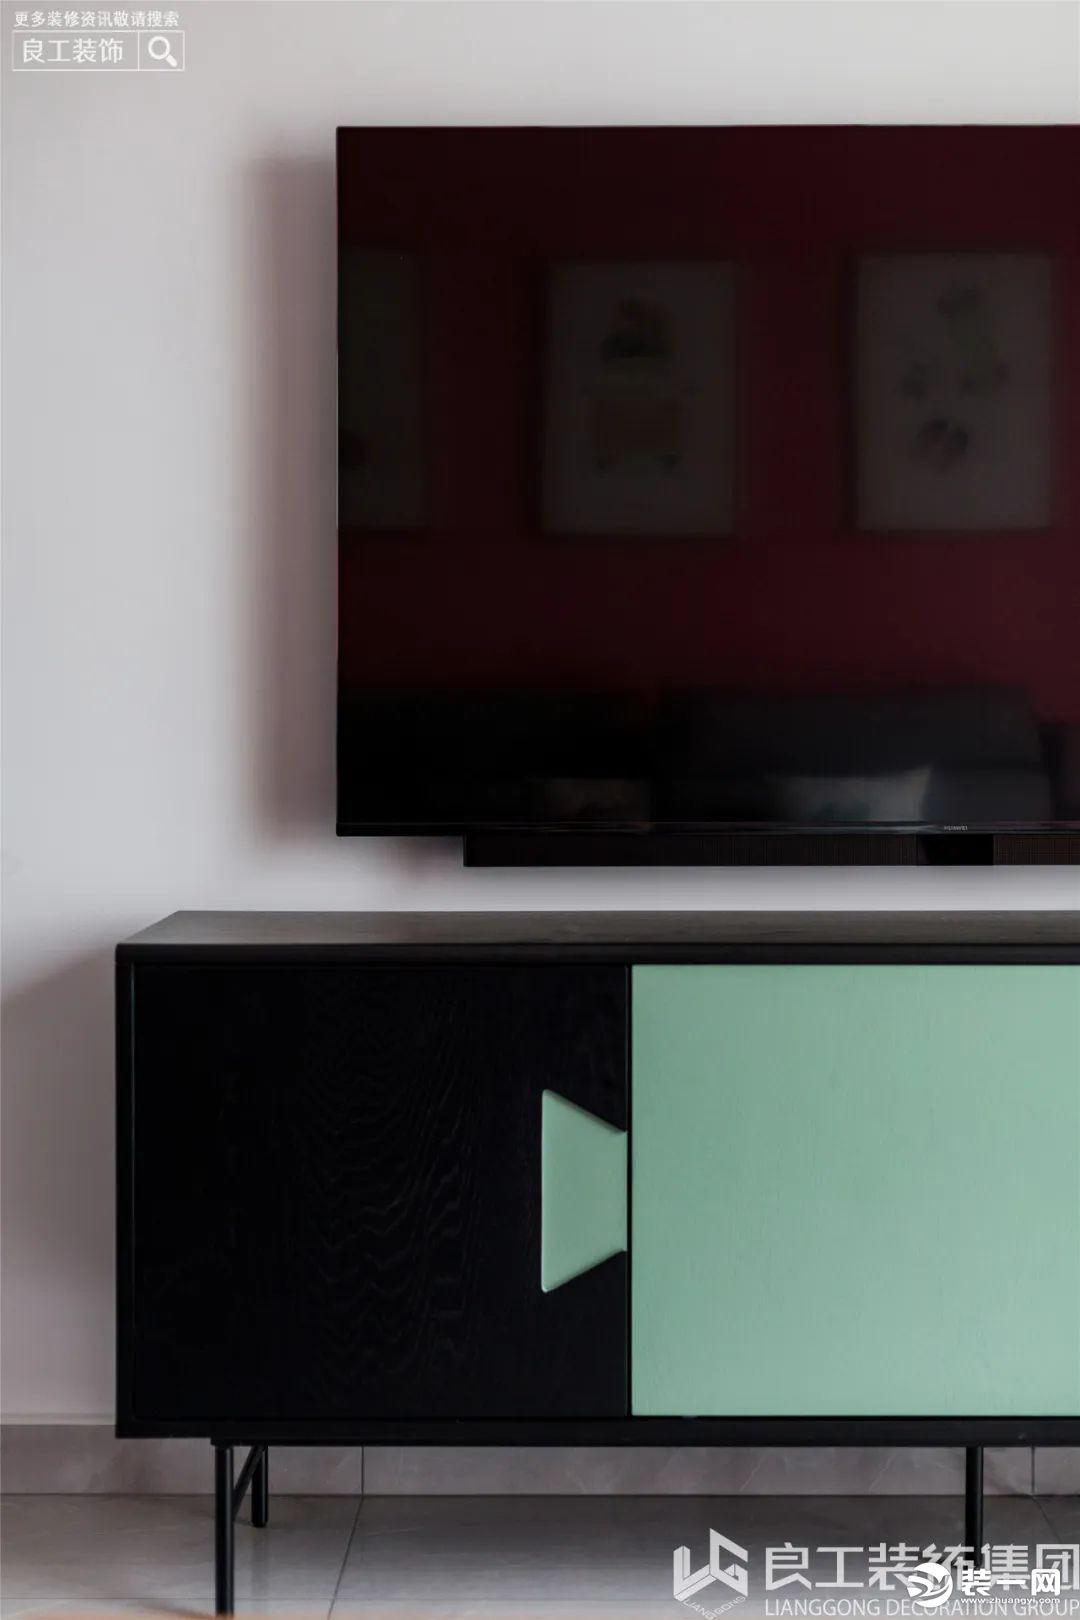 电视背景墙选用了纯色——淡灰，用黑、蓝撞色的时尚电视柜来丰富墙面，增加了空间的层次感